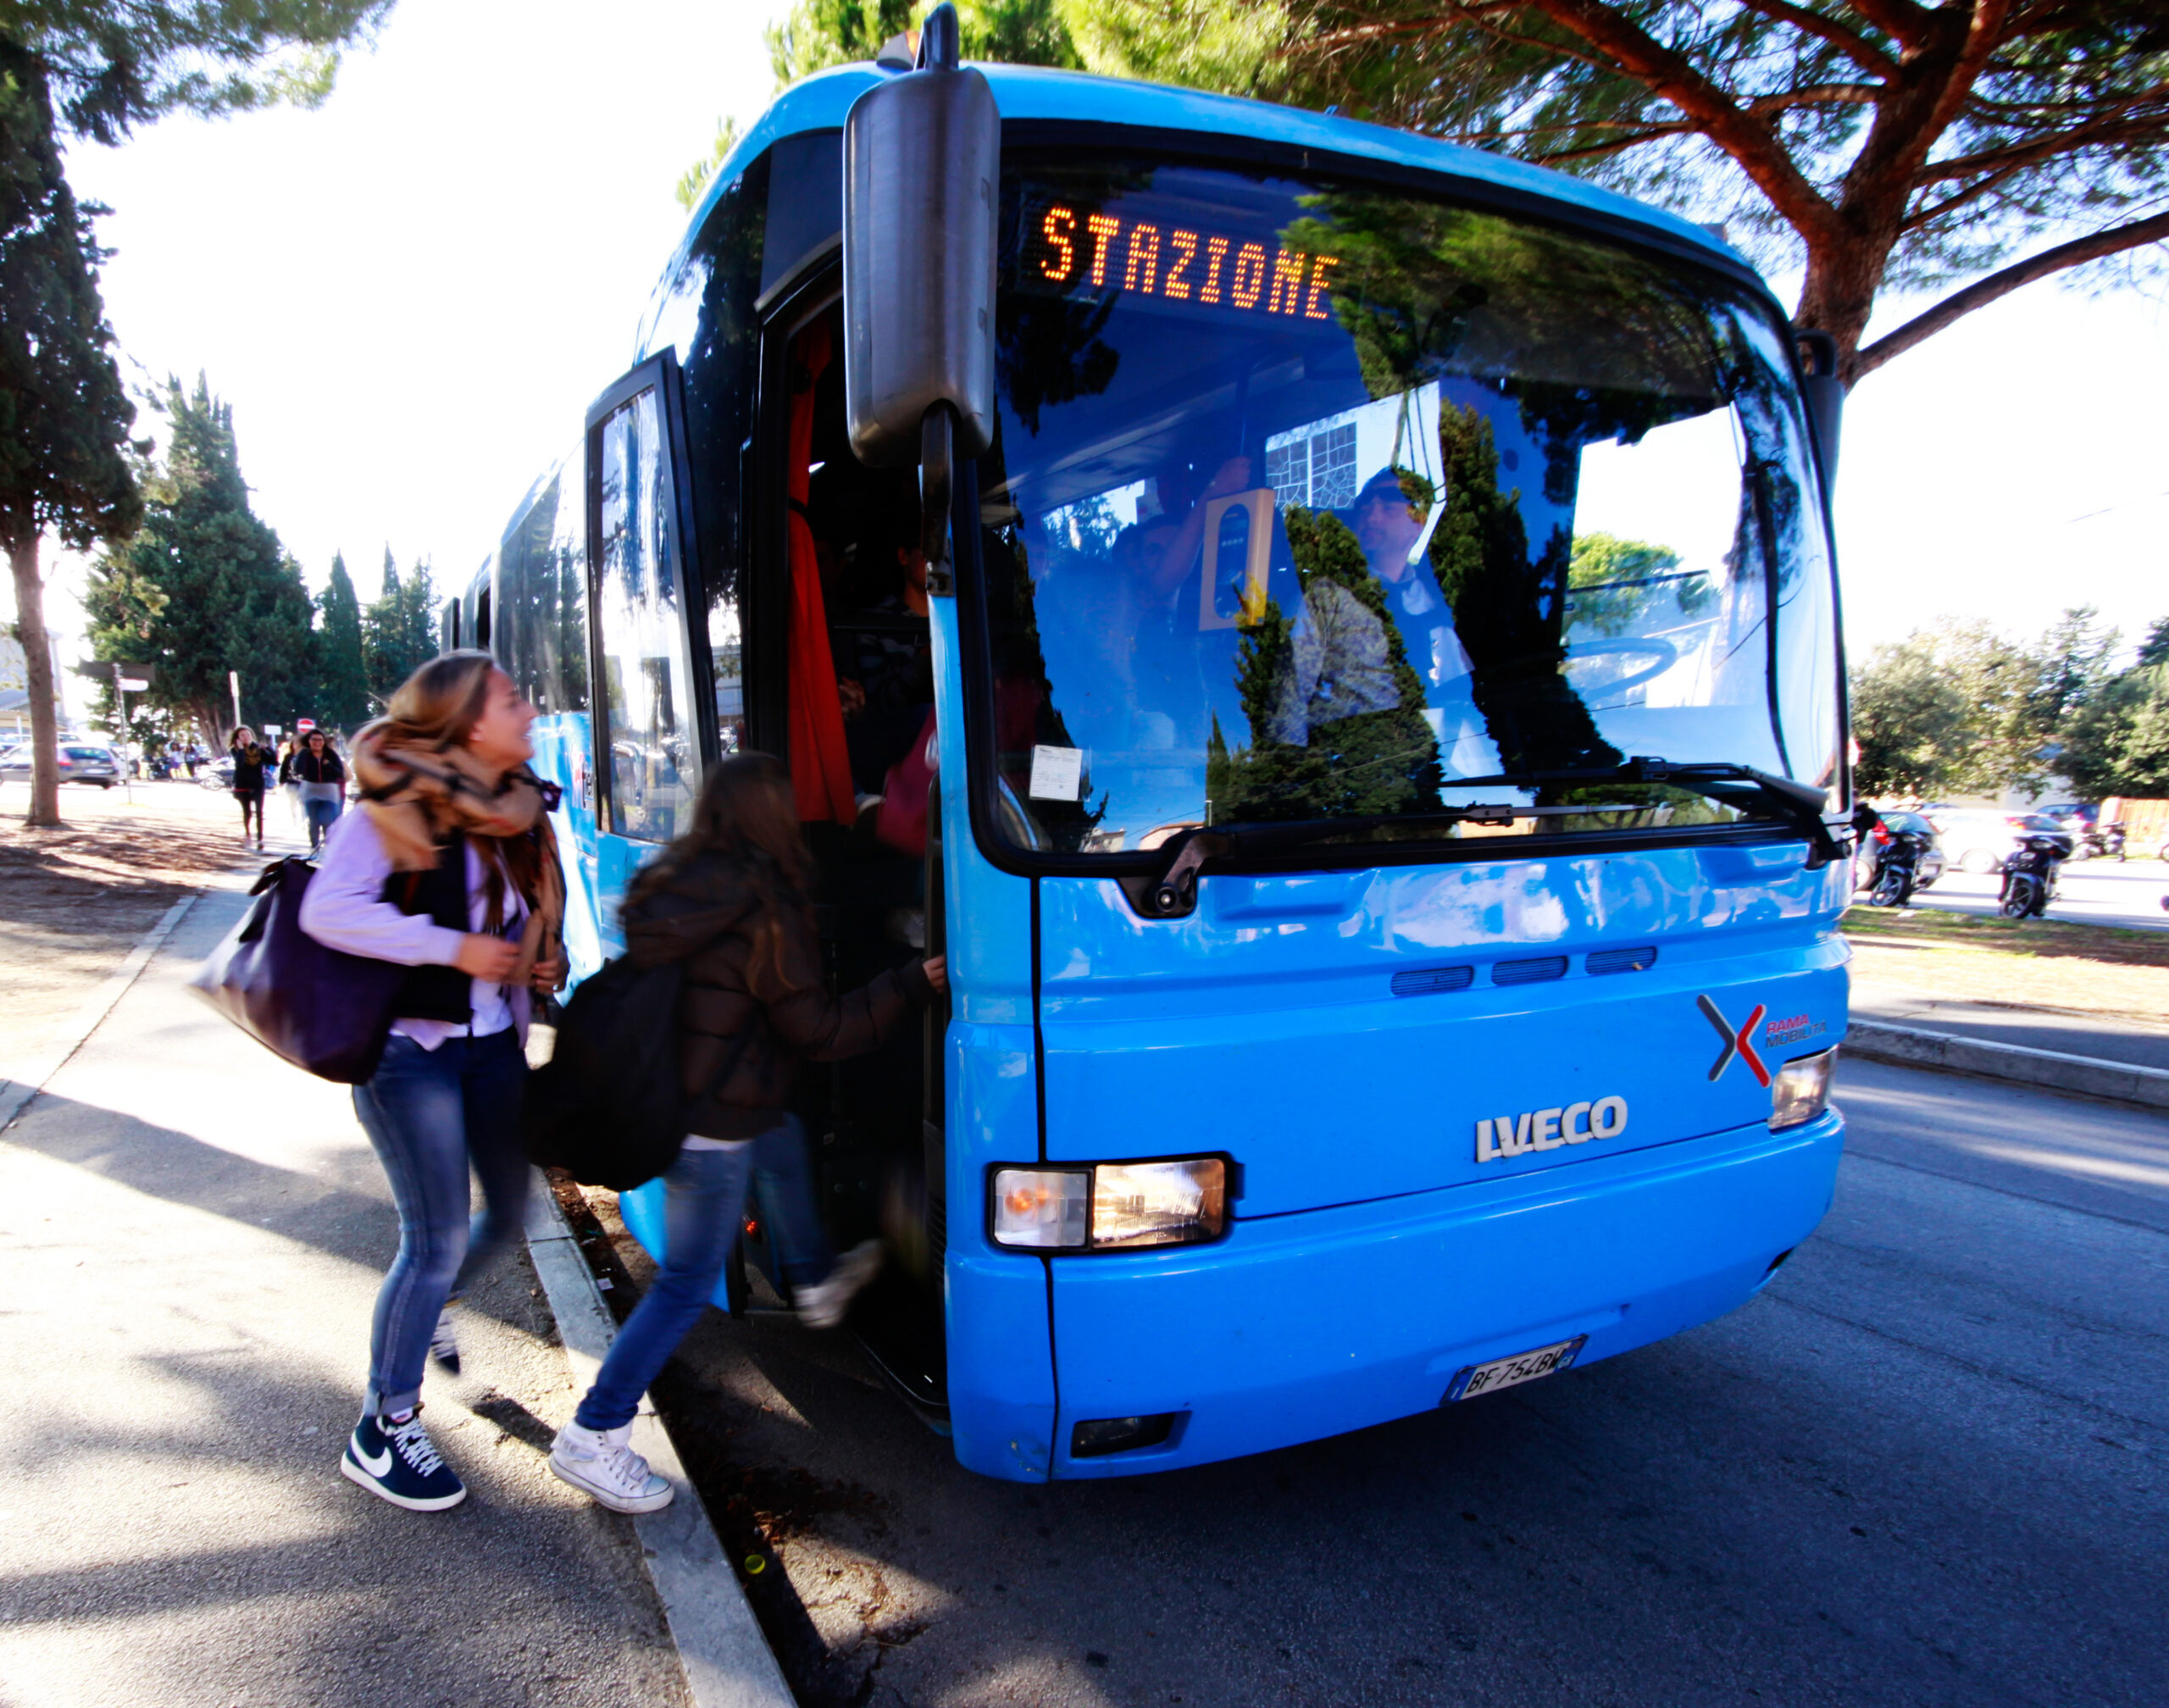 Toscana: Tiemme, nuovi orari per il servizio extraurbano verso Grosseto